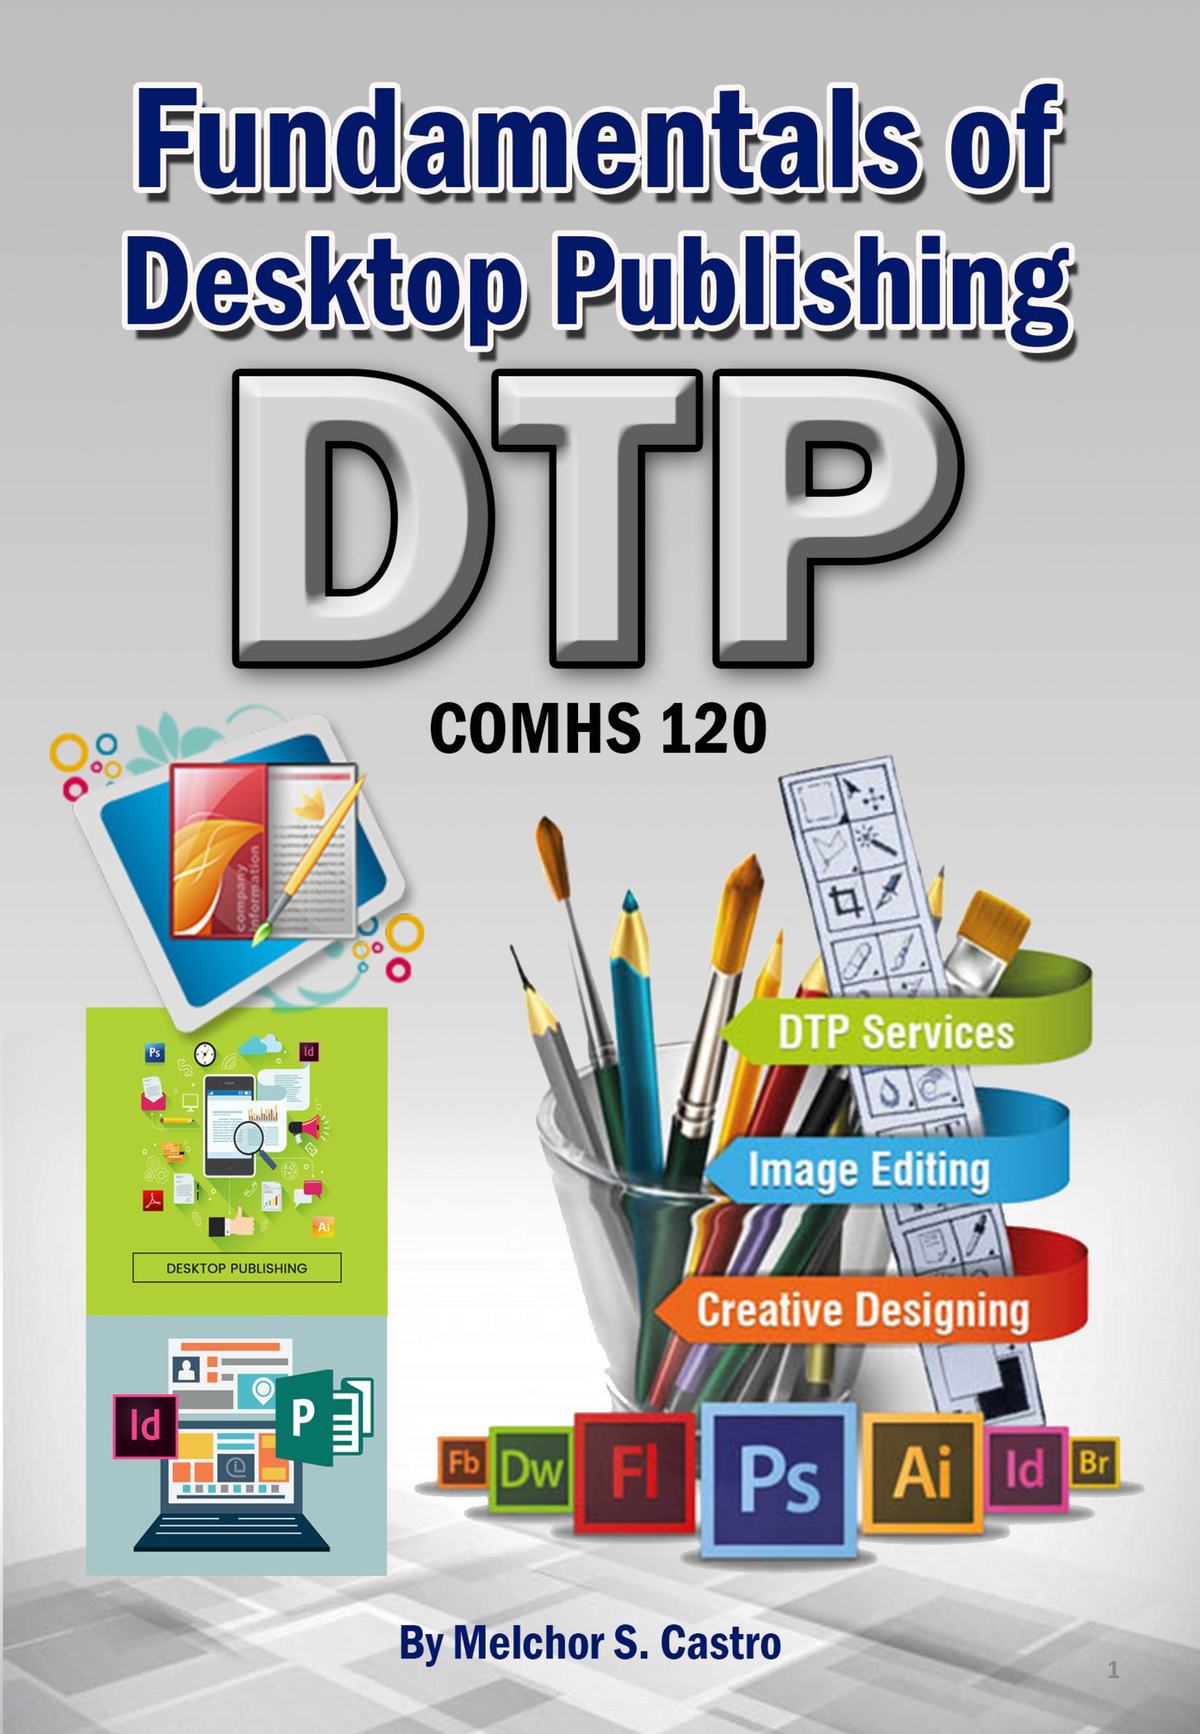 HO 1 DTP Desktop Publishing. - ppt download